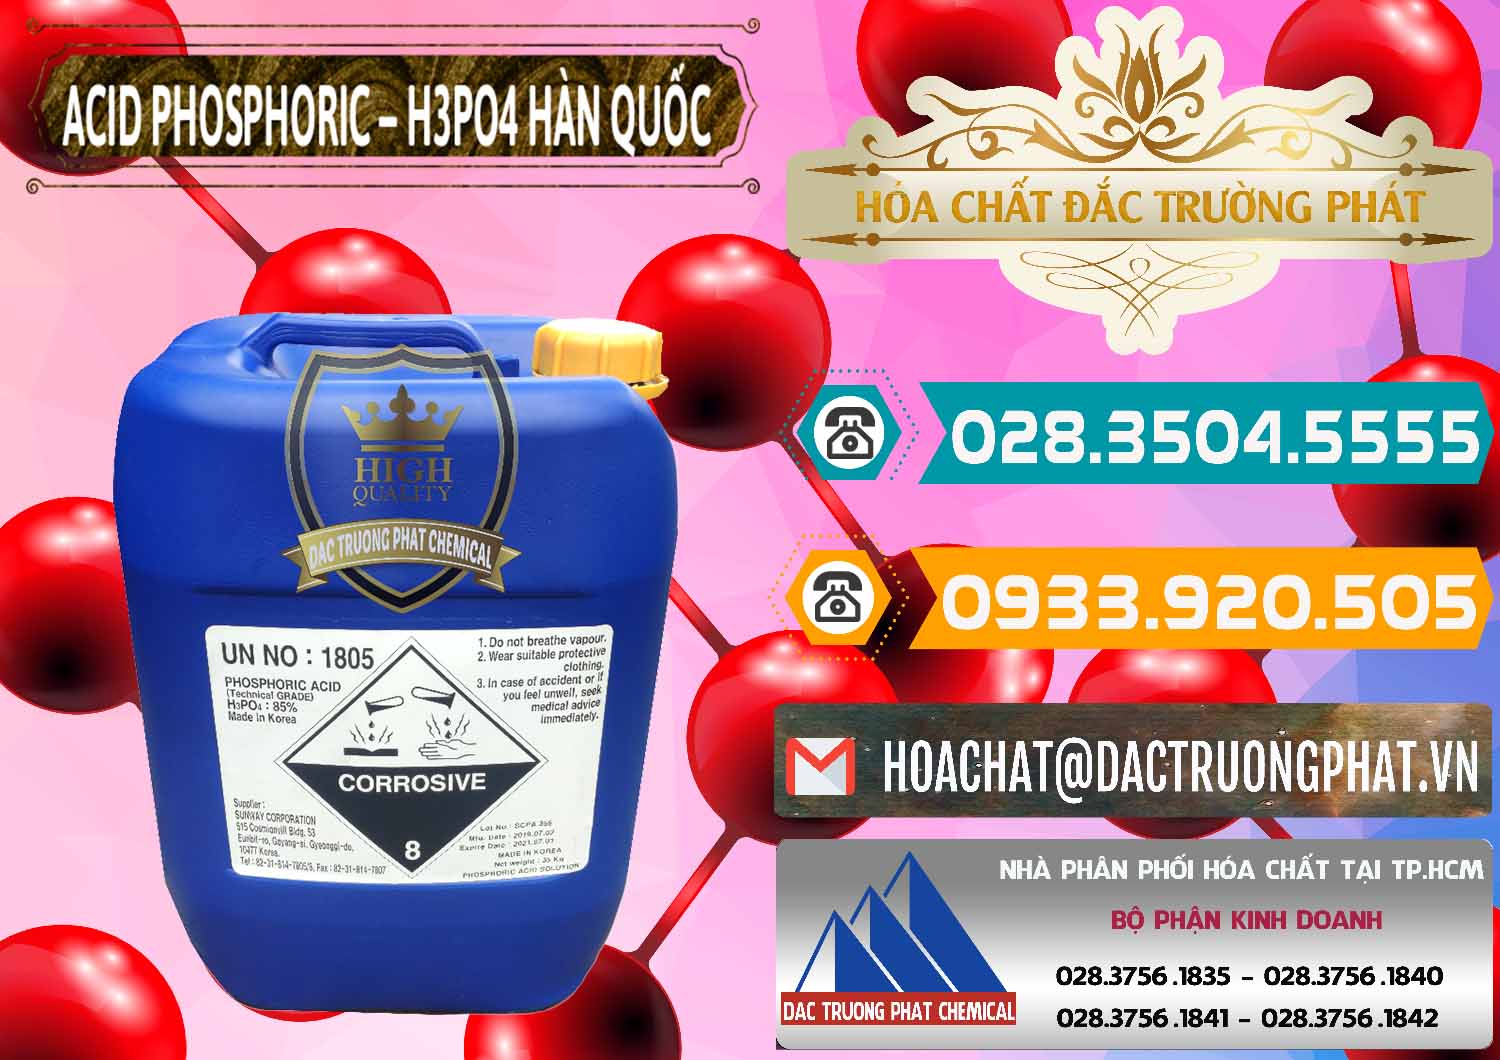 Cty chuyên bán _ cung ứng Acid Phosphoric – H3PO4 85% Can Xanh Hàn Quốc Korea - 0016 - Công ty bán - cung cấp hóa chất tại TP.HCM - congtyhoachat.vn